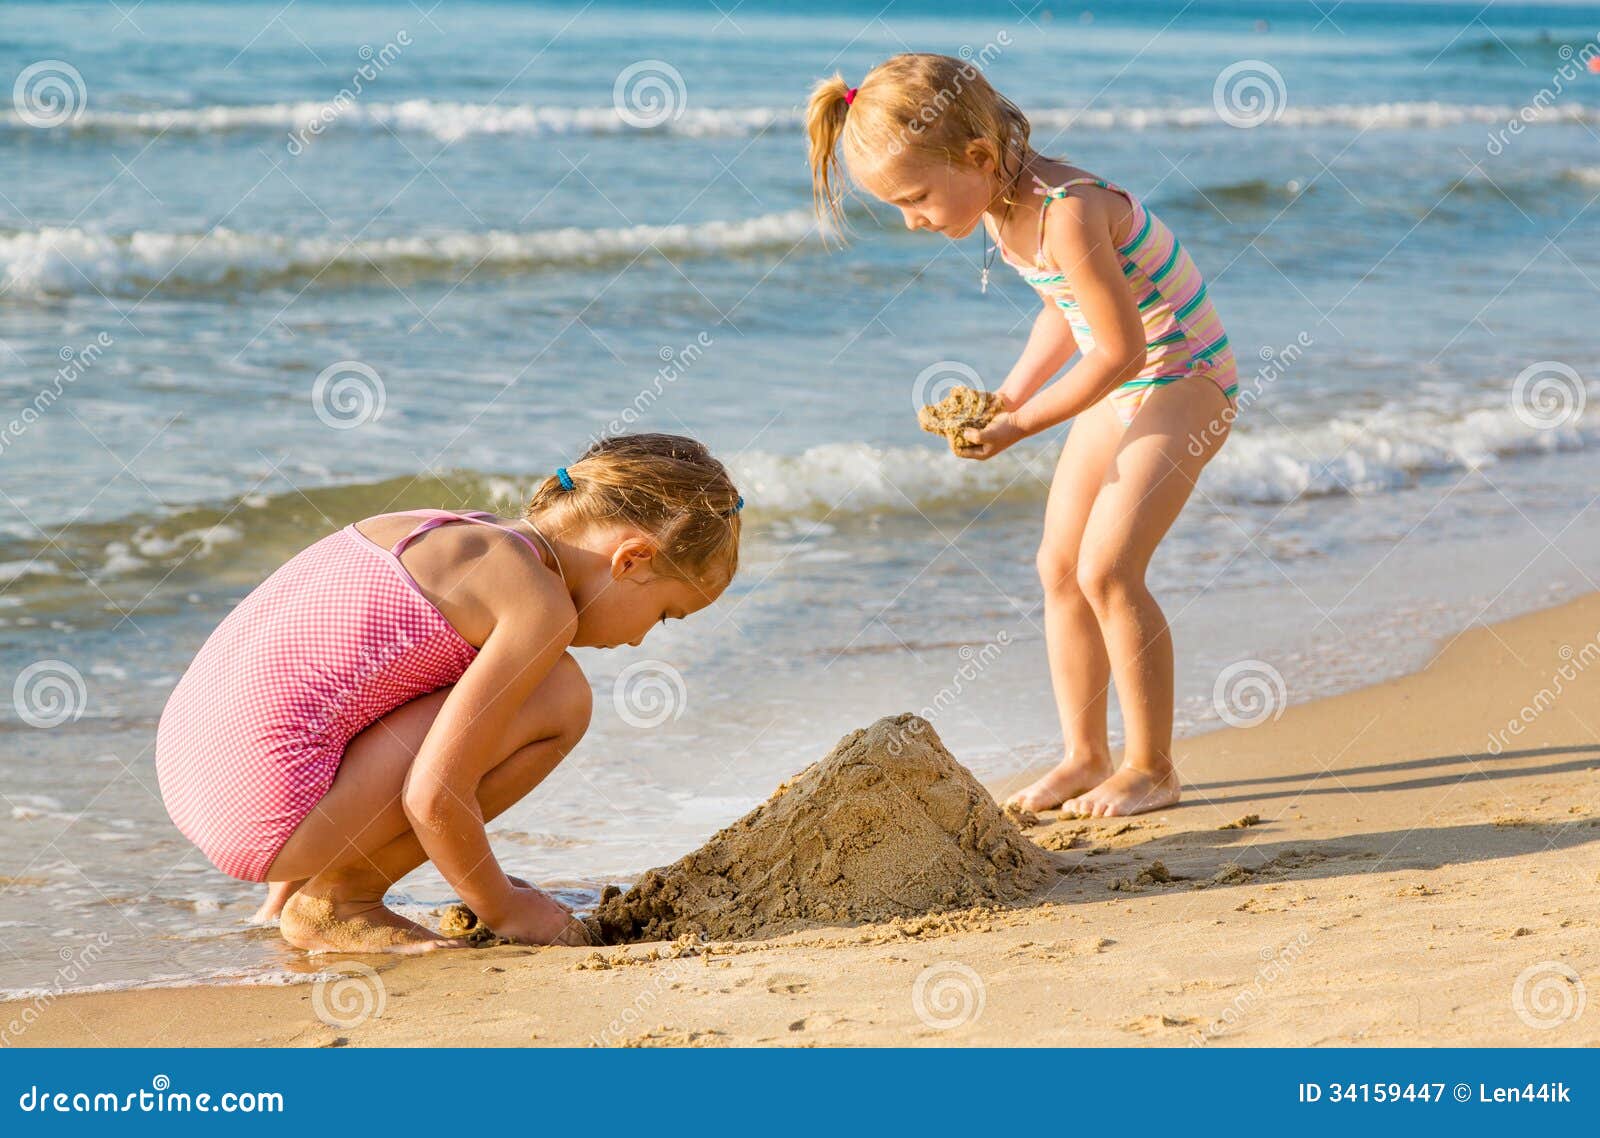 пляж с голыми детьми фото 98